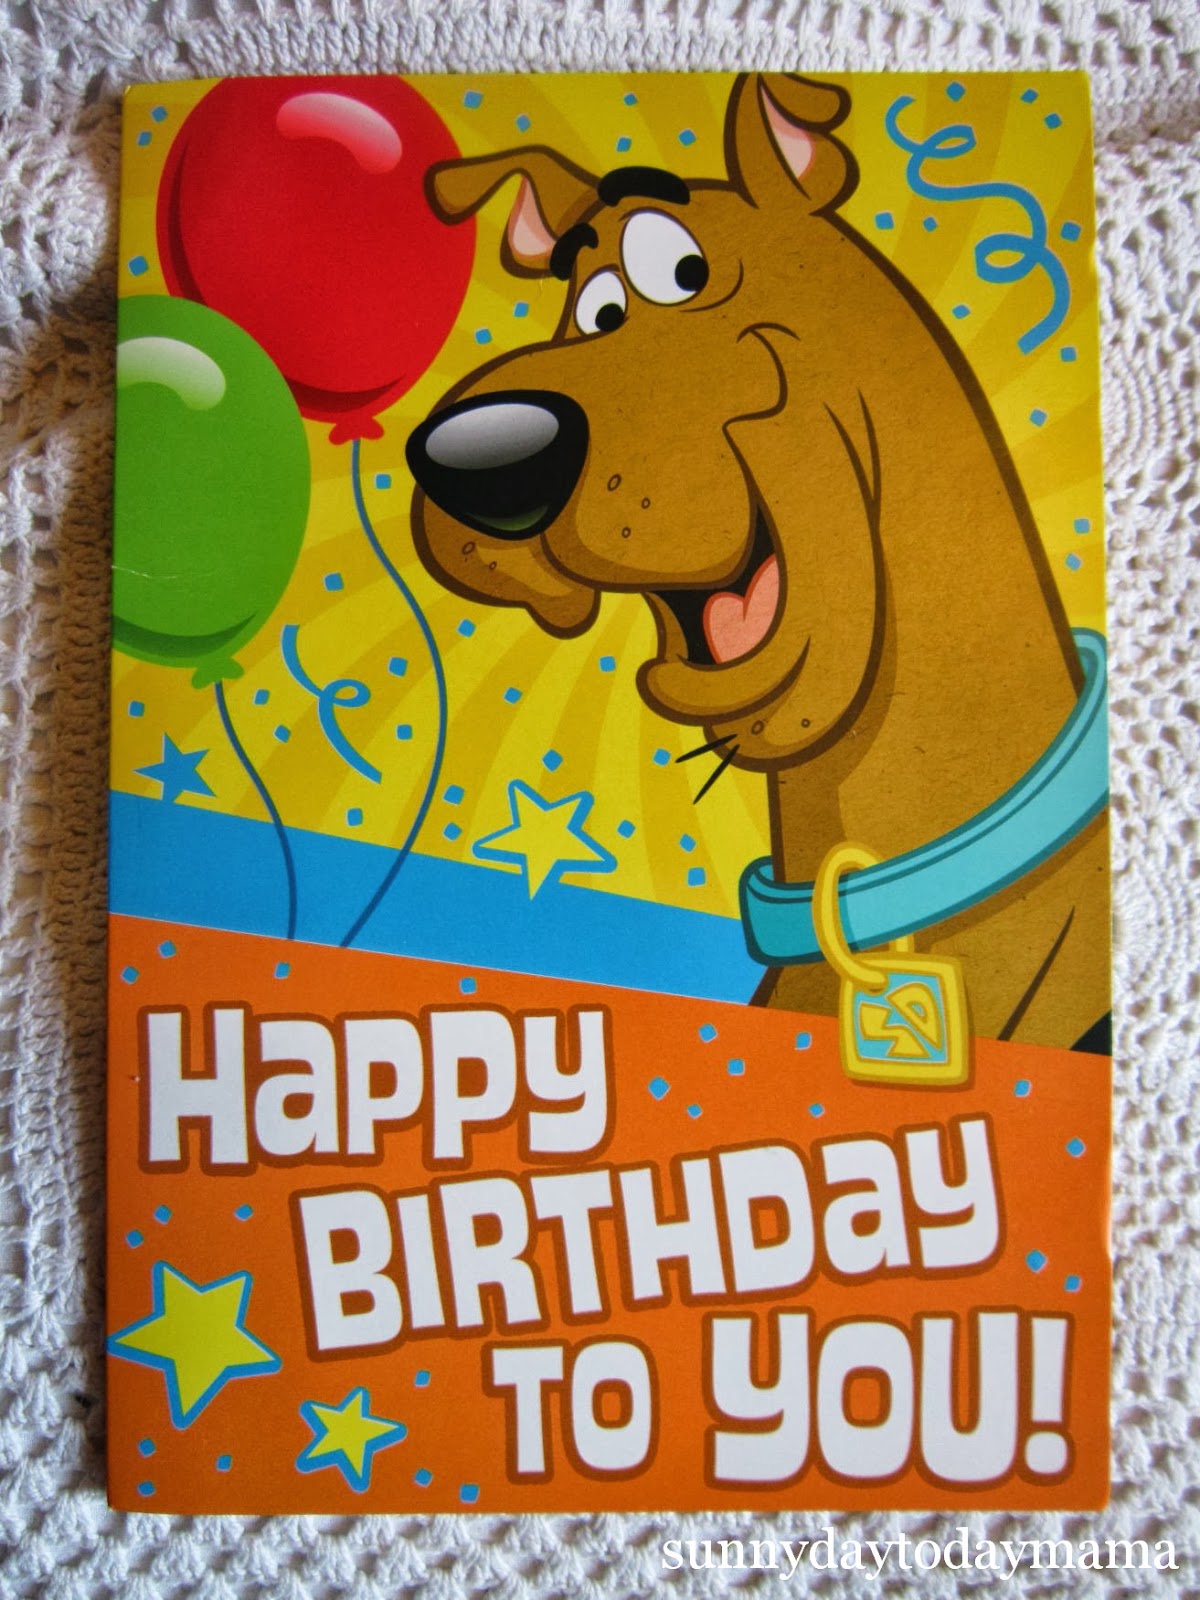 Scooby Doo Happy Birthday Quotes. QuotesGram